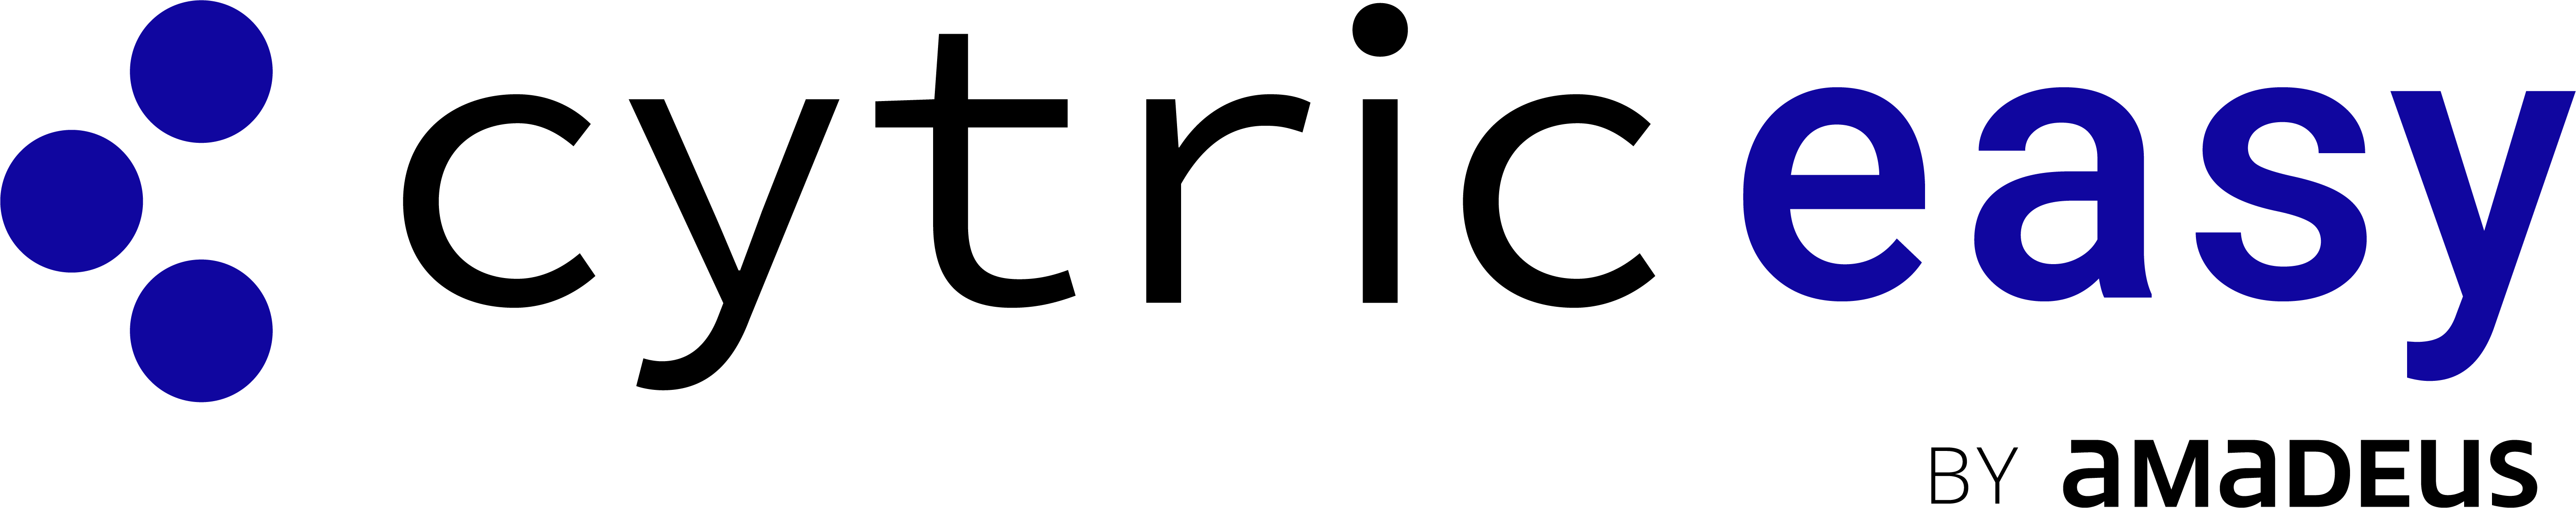 Cytric easy by Amadeus logo